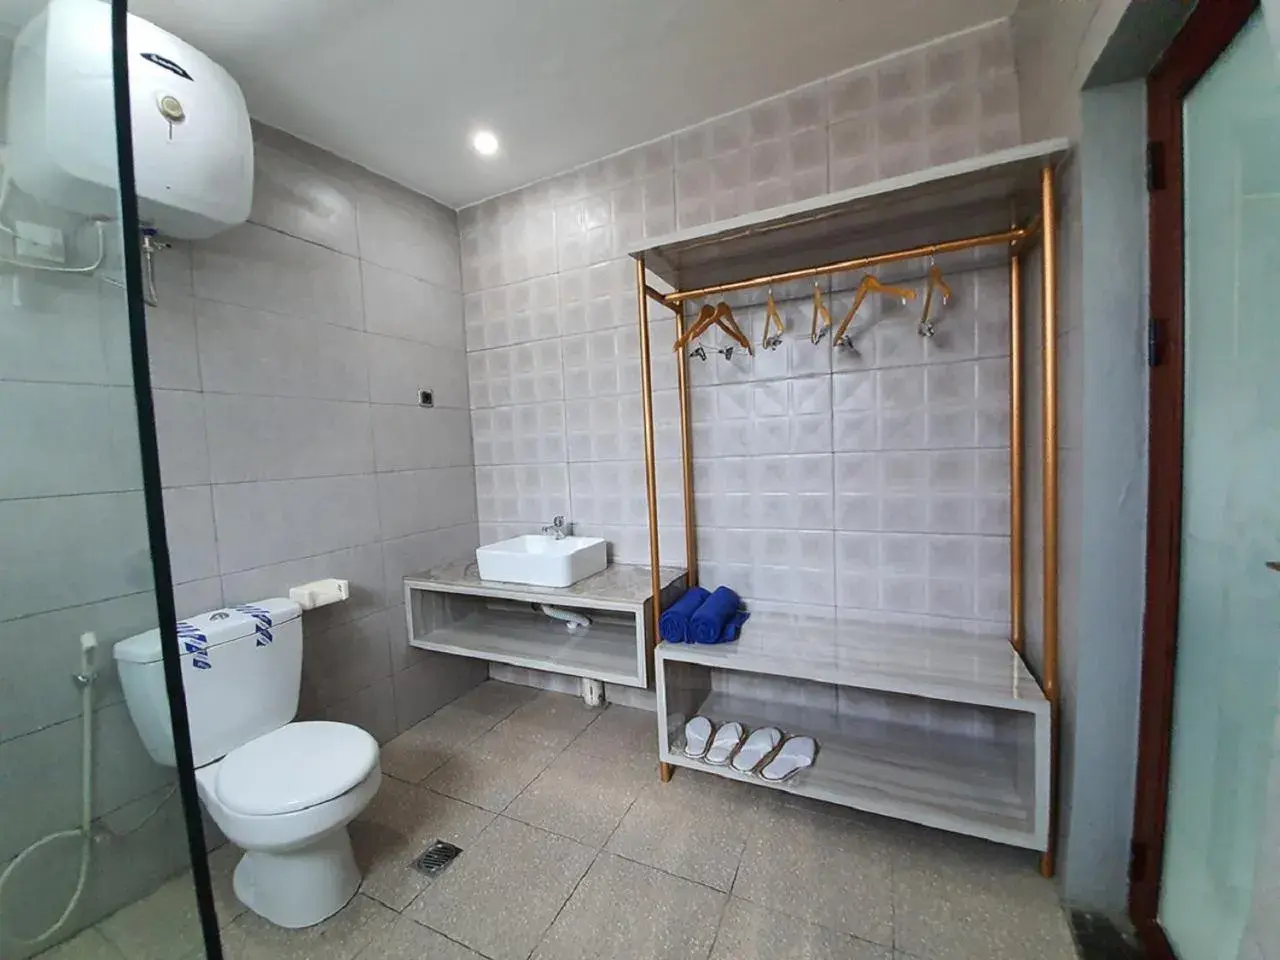 Bathroom in Sanur Agung Hotel